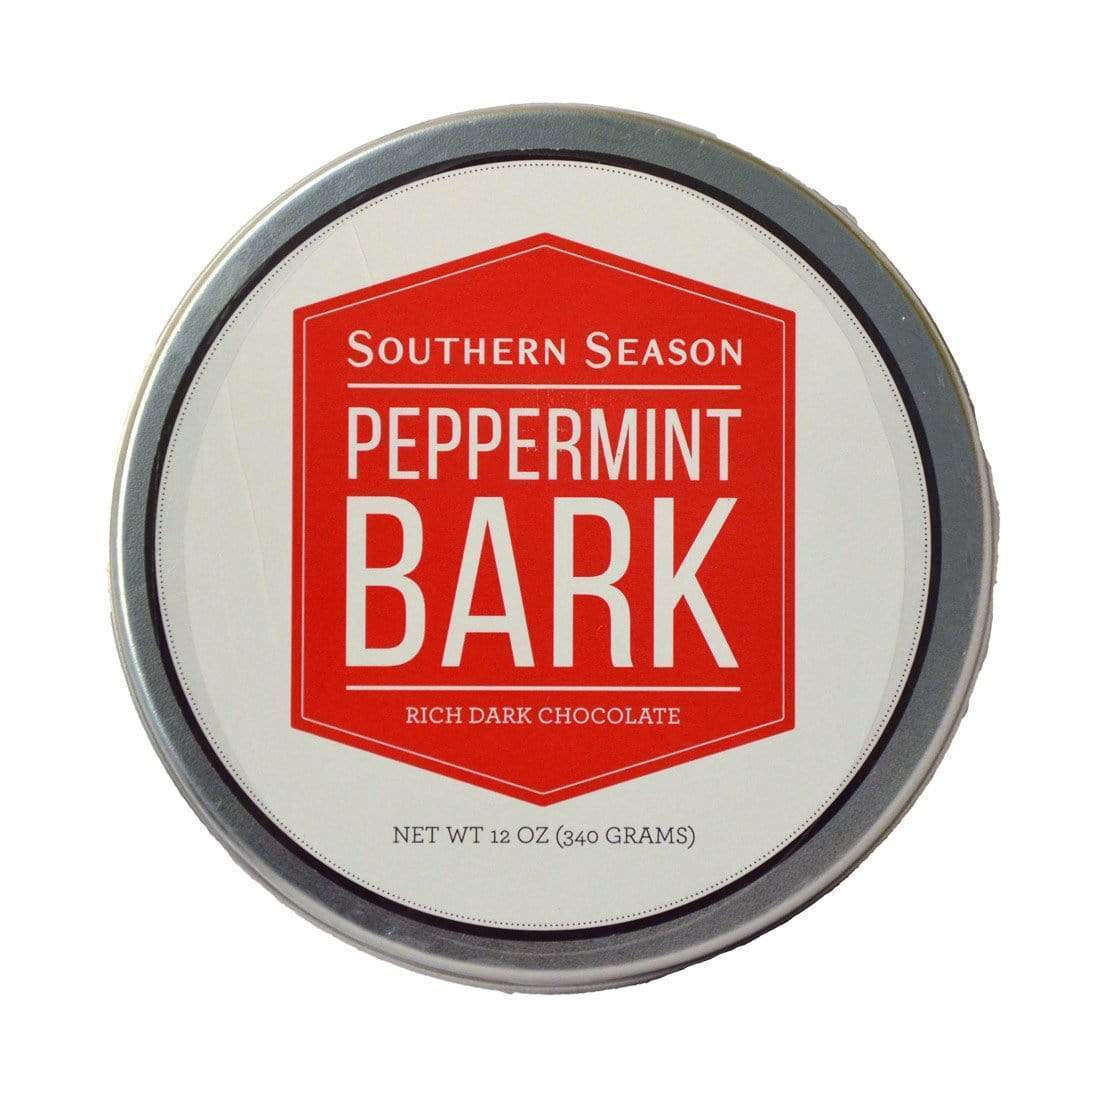 Southern Season Southern Season Peppermint Bark 12 oz